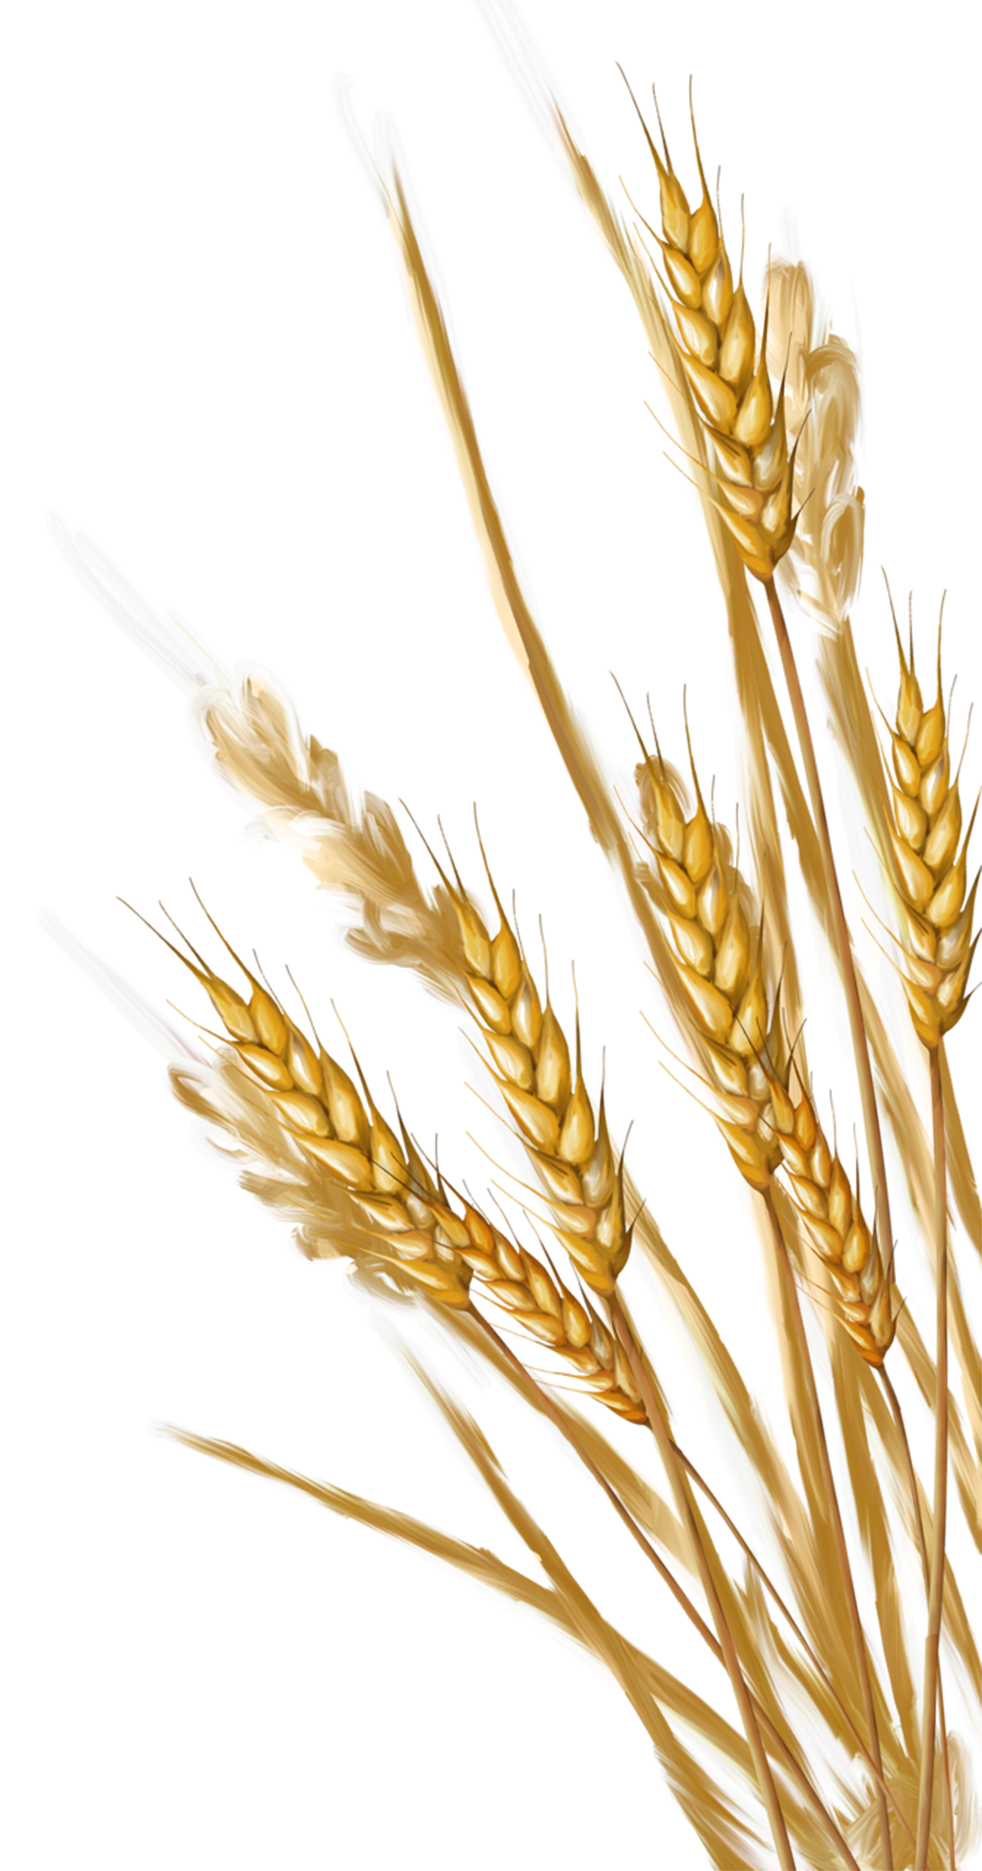 Grain clipart wheat ear, Grain wheat ear Transparent FREE for download